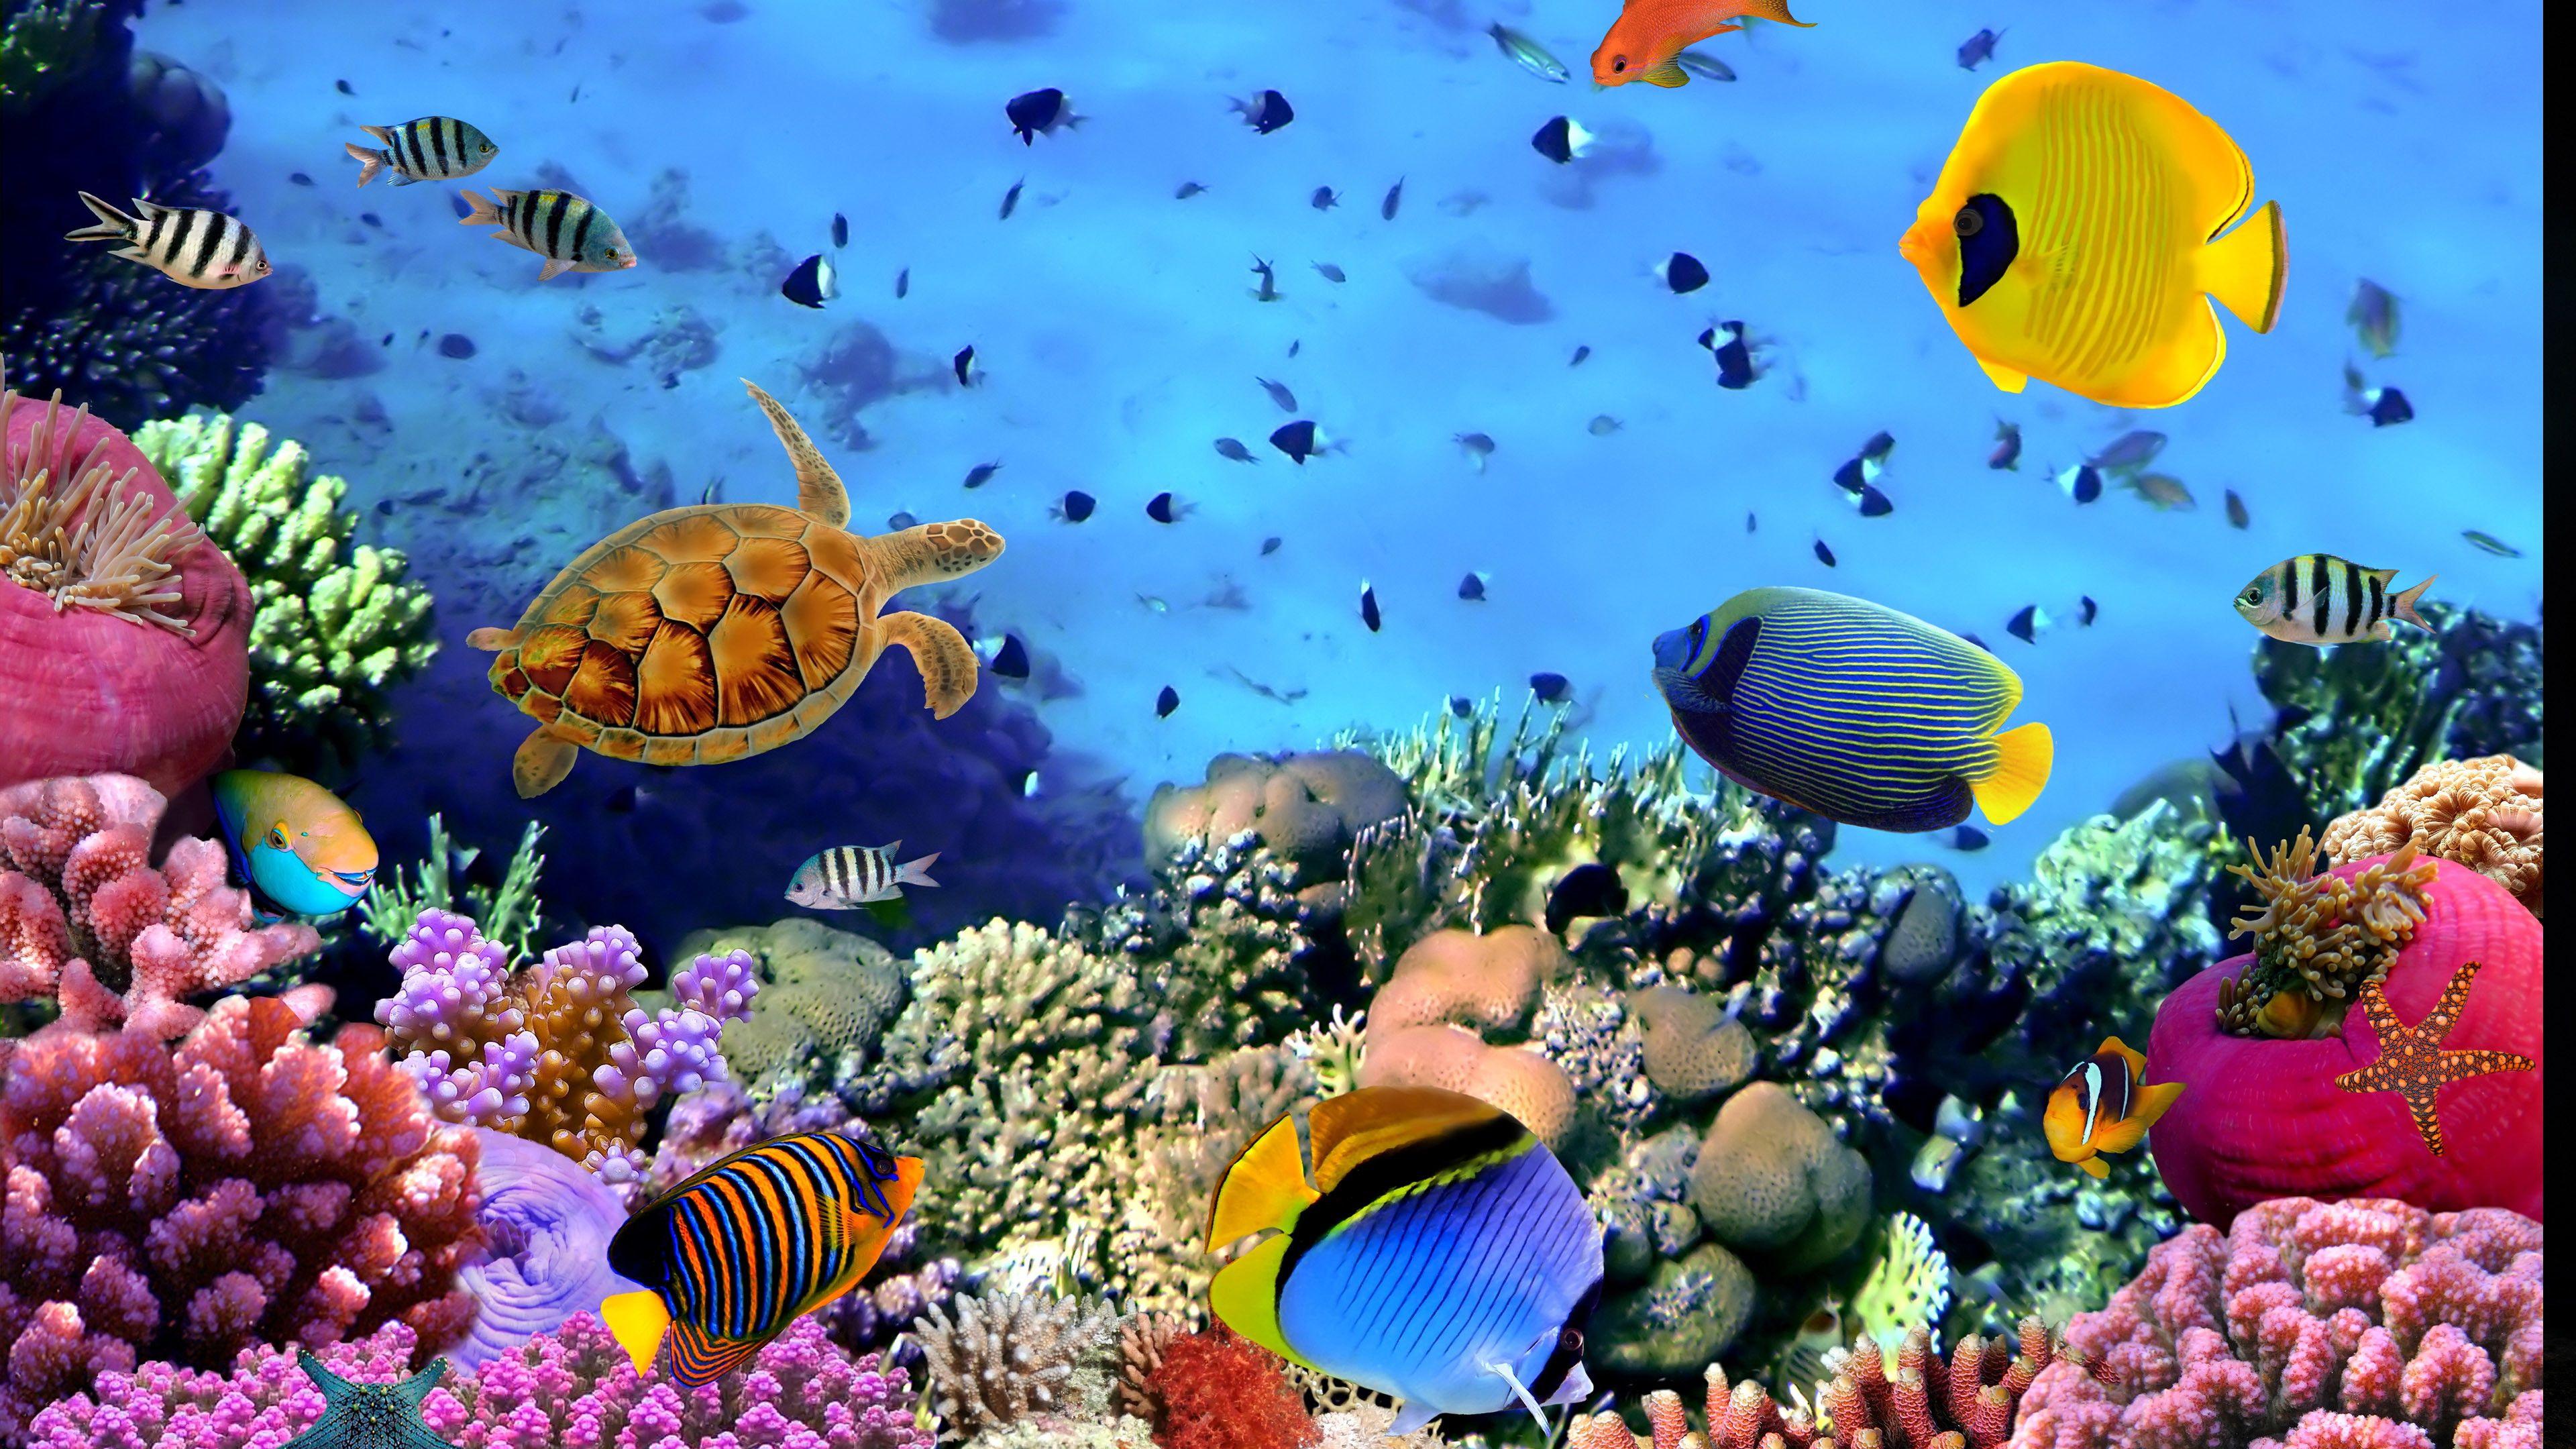 desktop aquarium 3d mac live wallpaper download